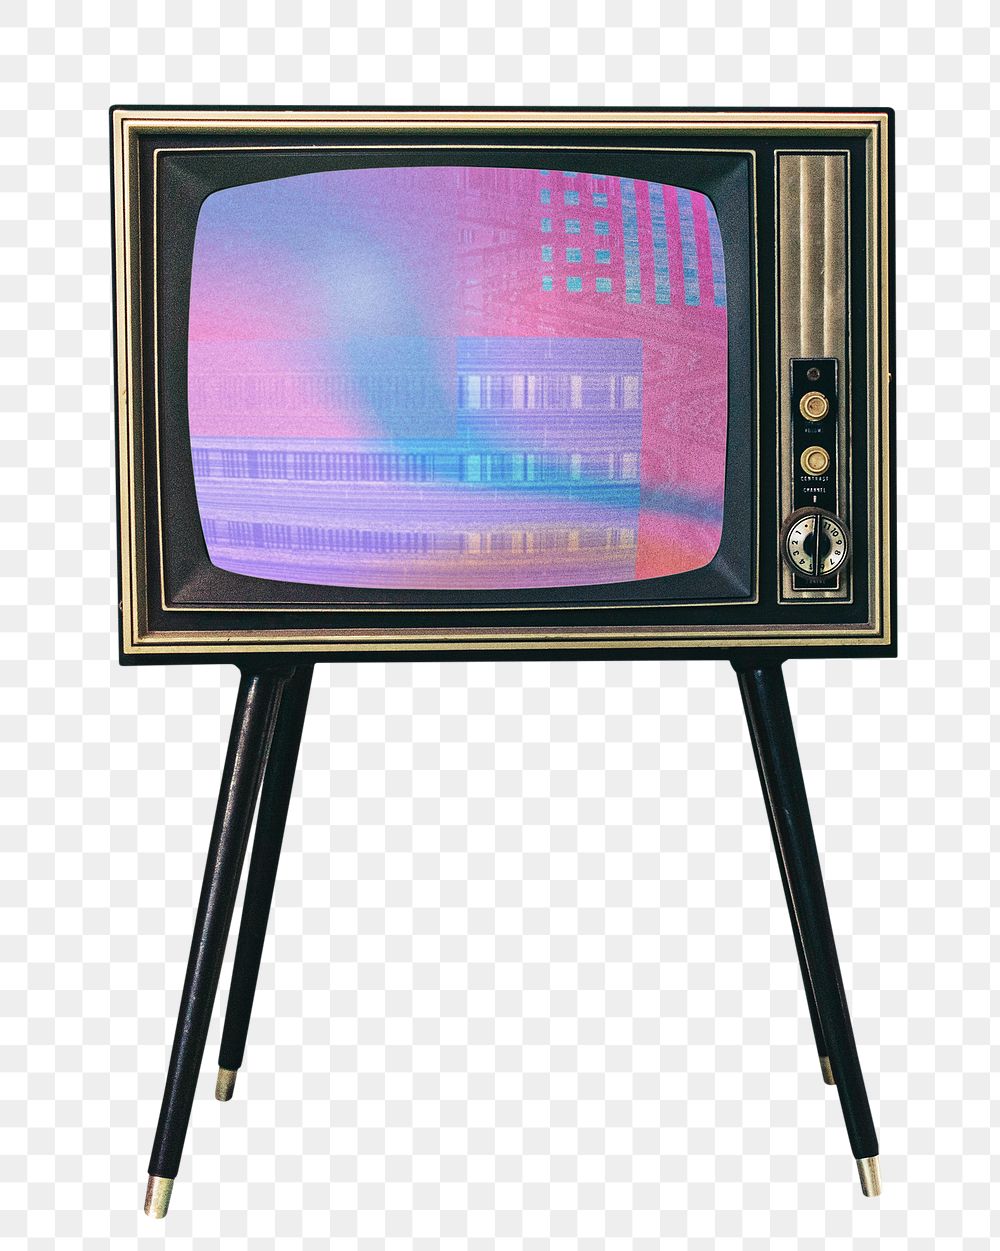 Vintage TV png, transparent background